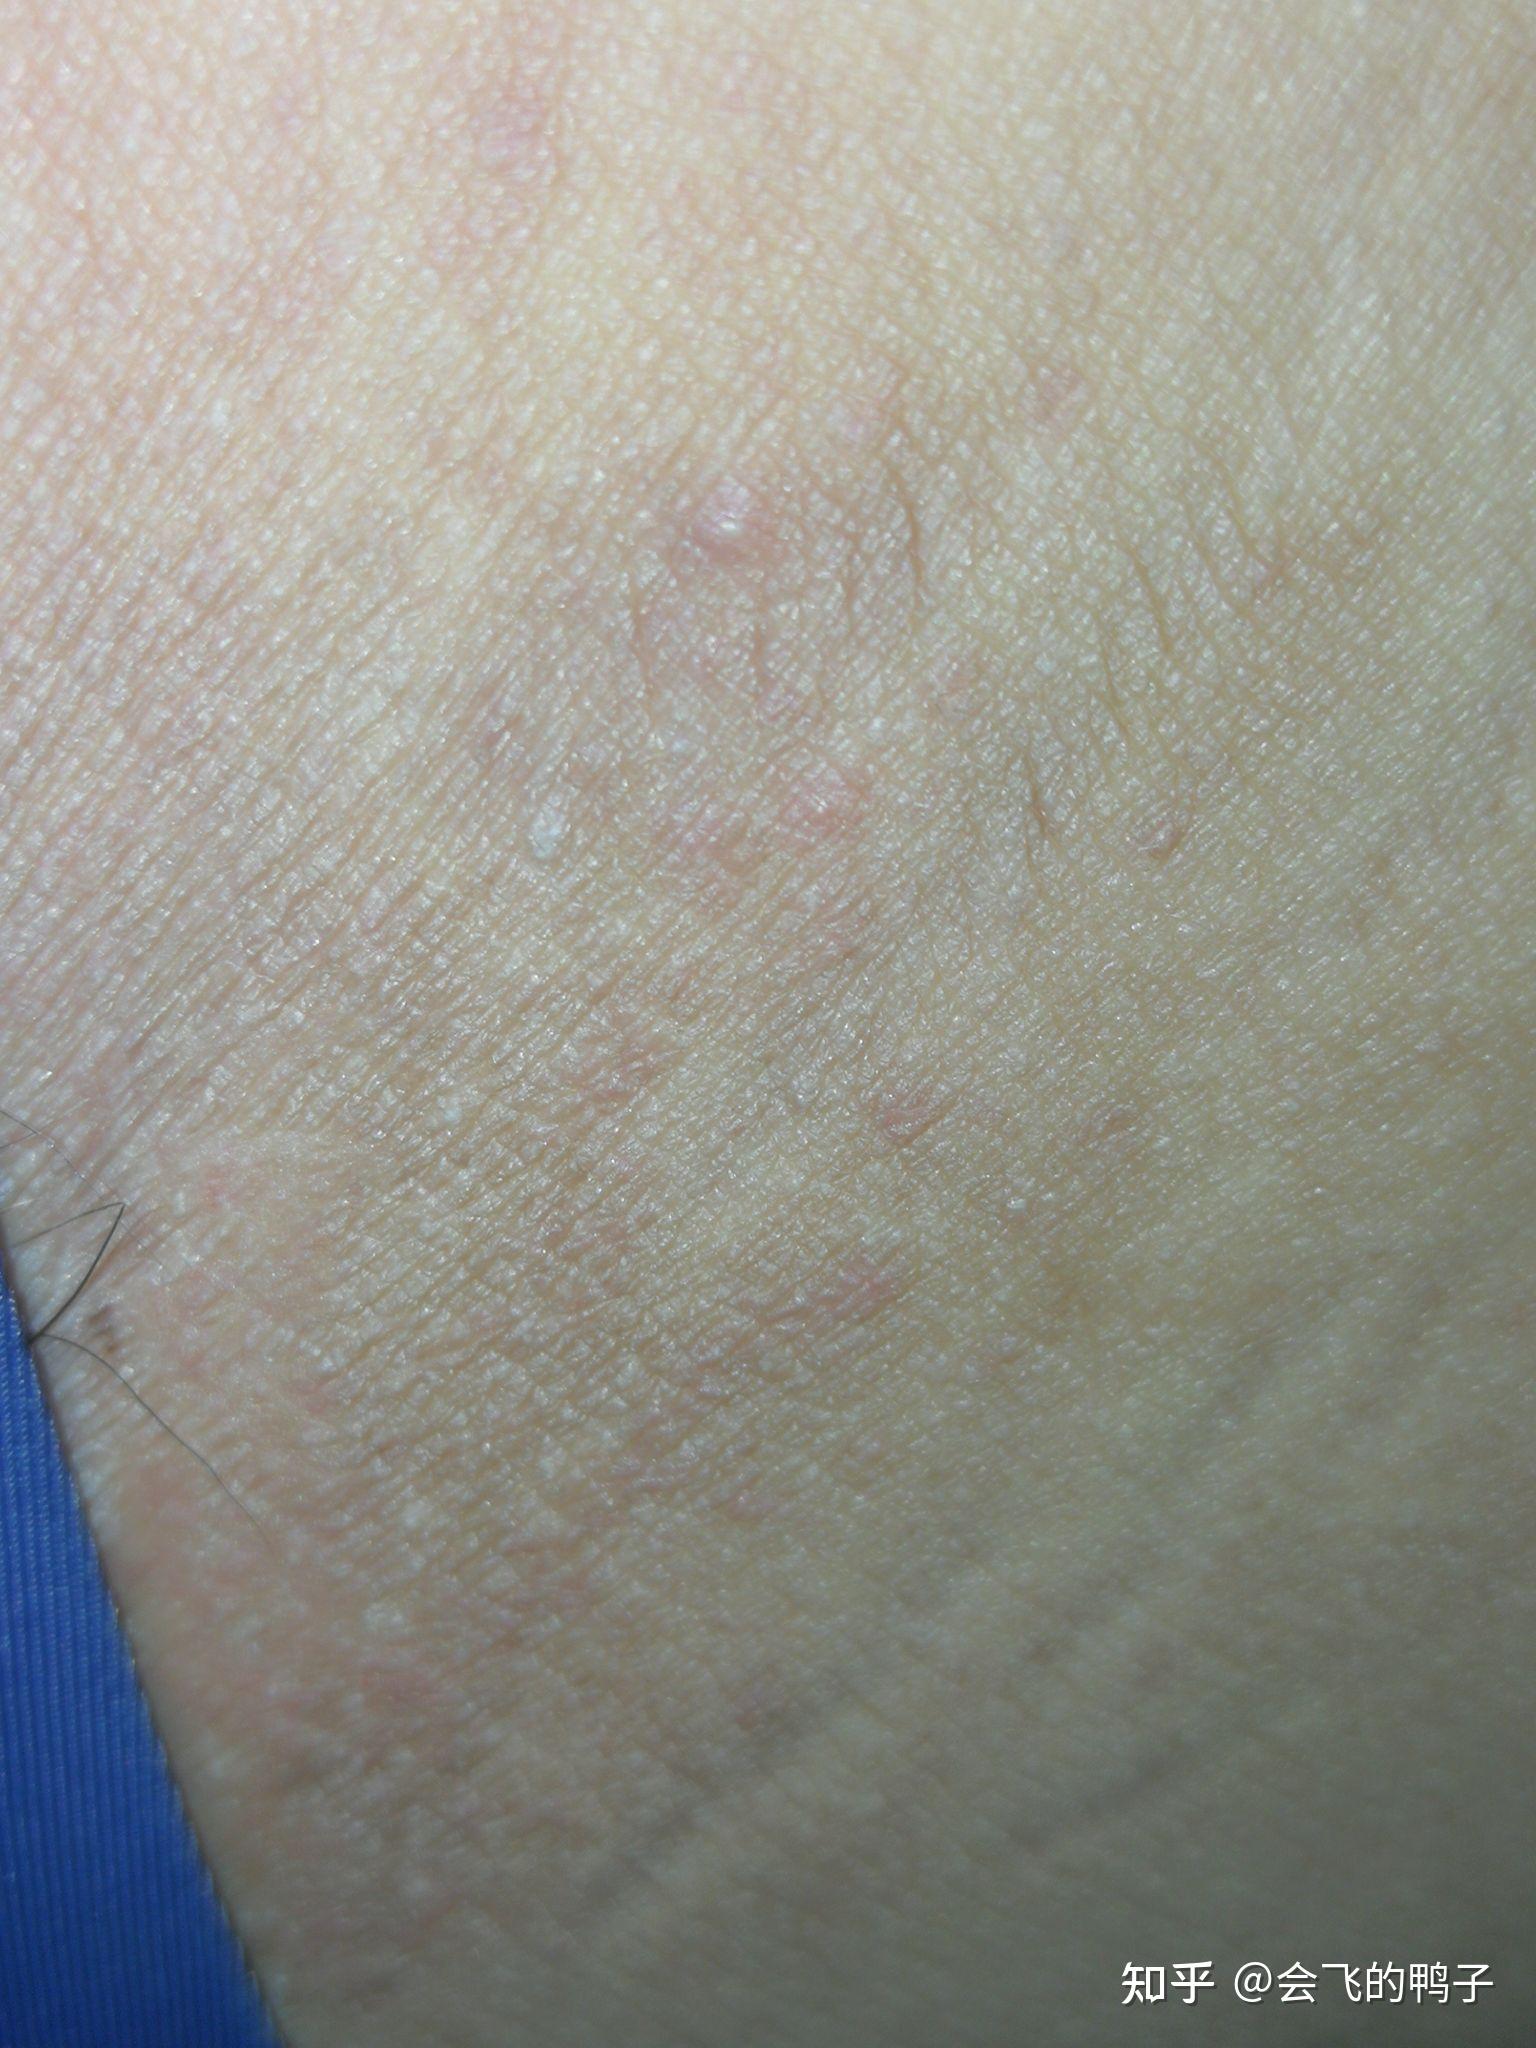 手臂皮肤上最近起了好几块一片一片像痱子似的小颗粒，不疼偶尔痒_痱子_邻医网